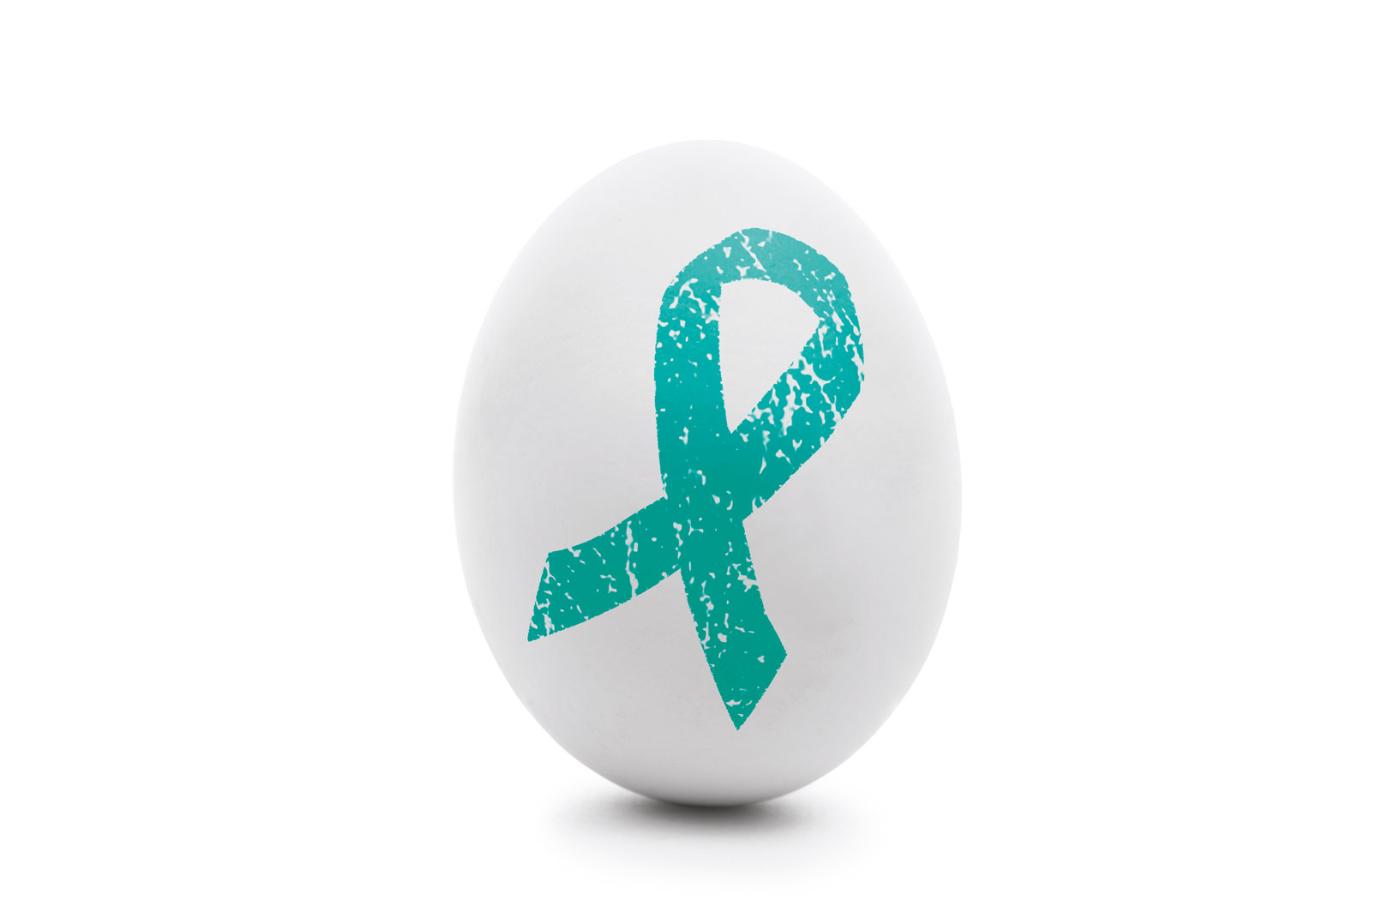 Rak jajnika był przez wiele lat bardzo niewdzięcznym nowotworem. Obecnie rokowania są lepsze.